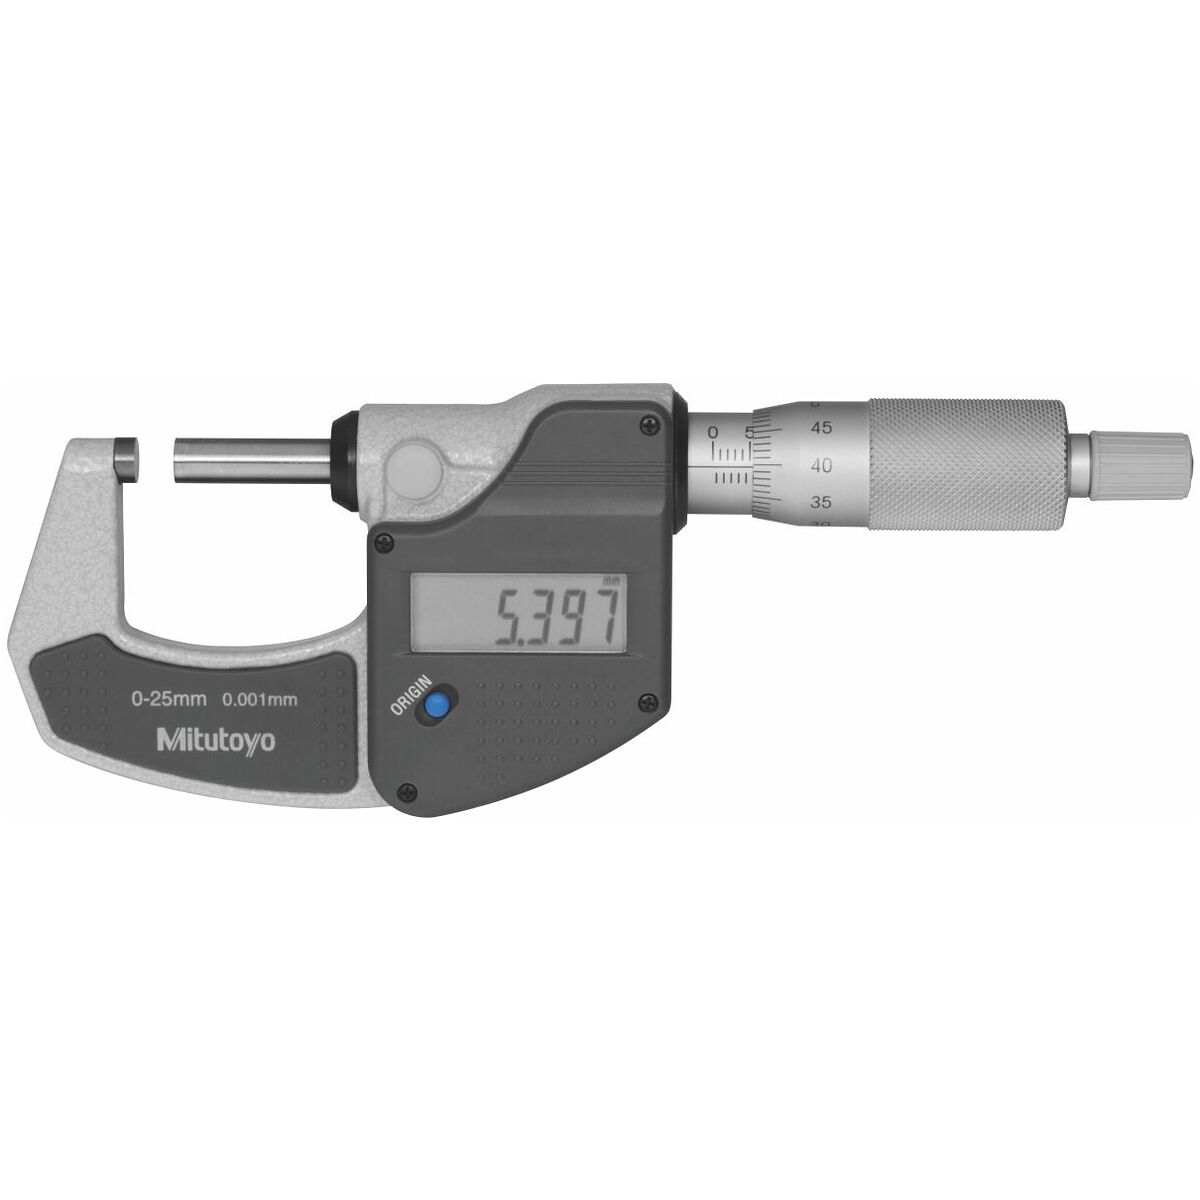 Digital Mikrometer Bügelmessschraube Messschraube Messwerkzeug Micrometer 0-25mm 